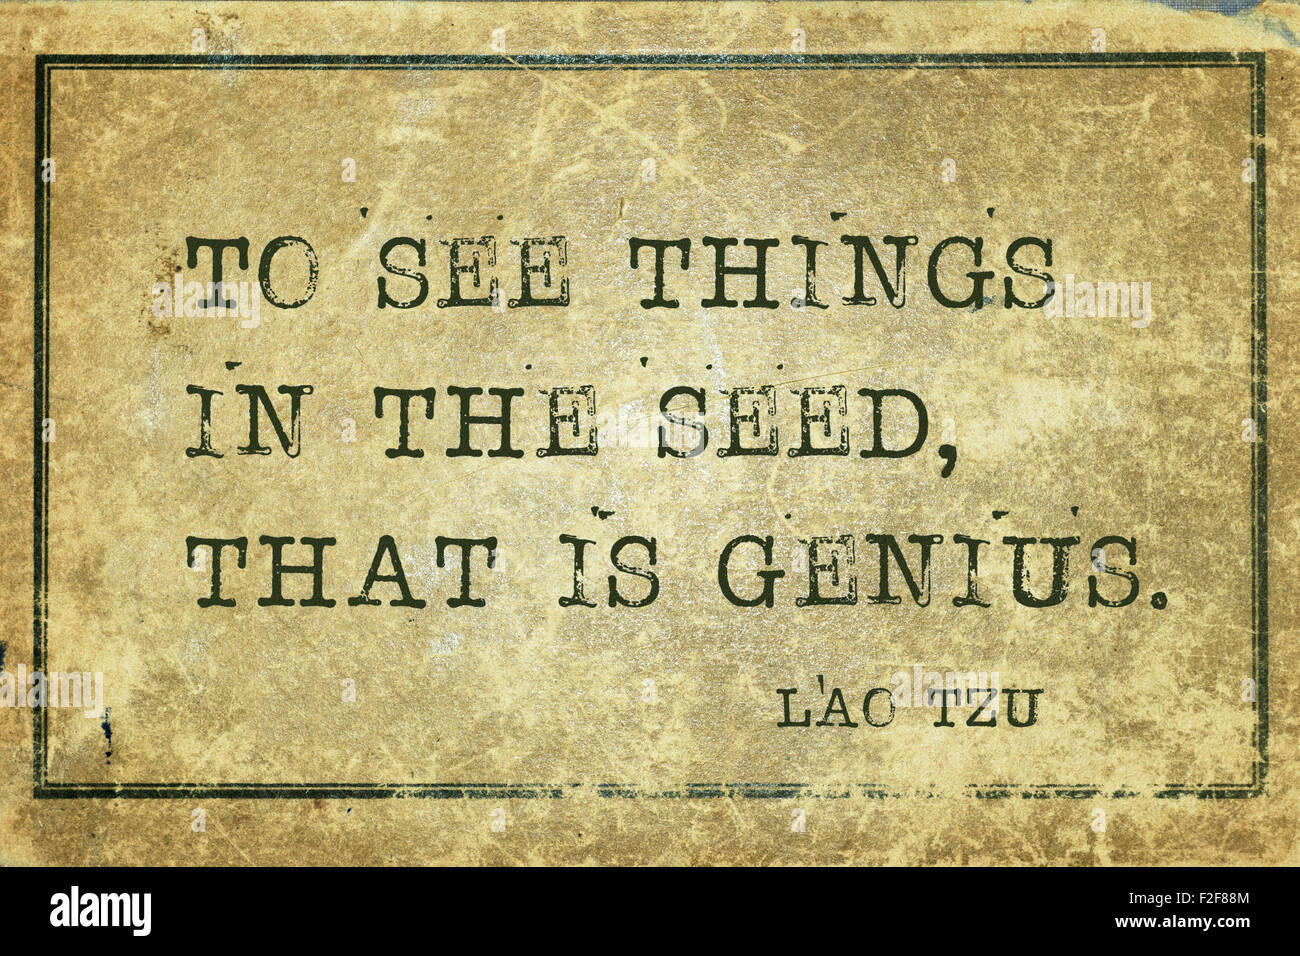 Dinge in das Saatgut, das heißt sehen Genie-antike chinesischer Philosoph Laotse Zitat auf Grunge Vintage Karton gedruckt Stockfoto